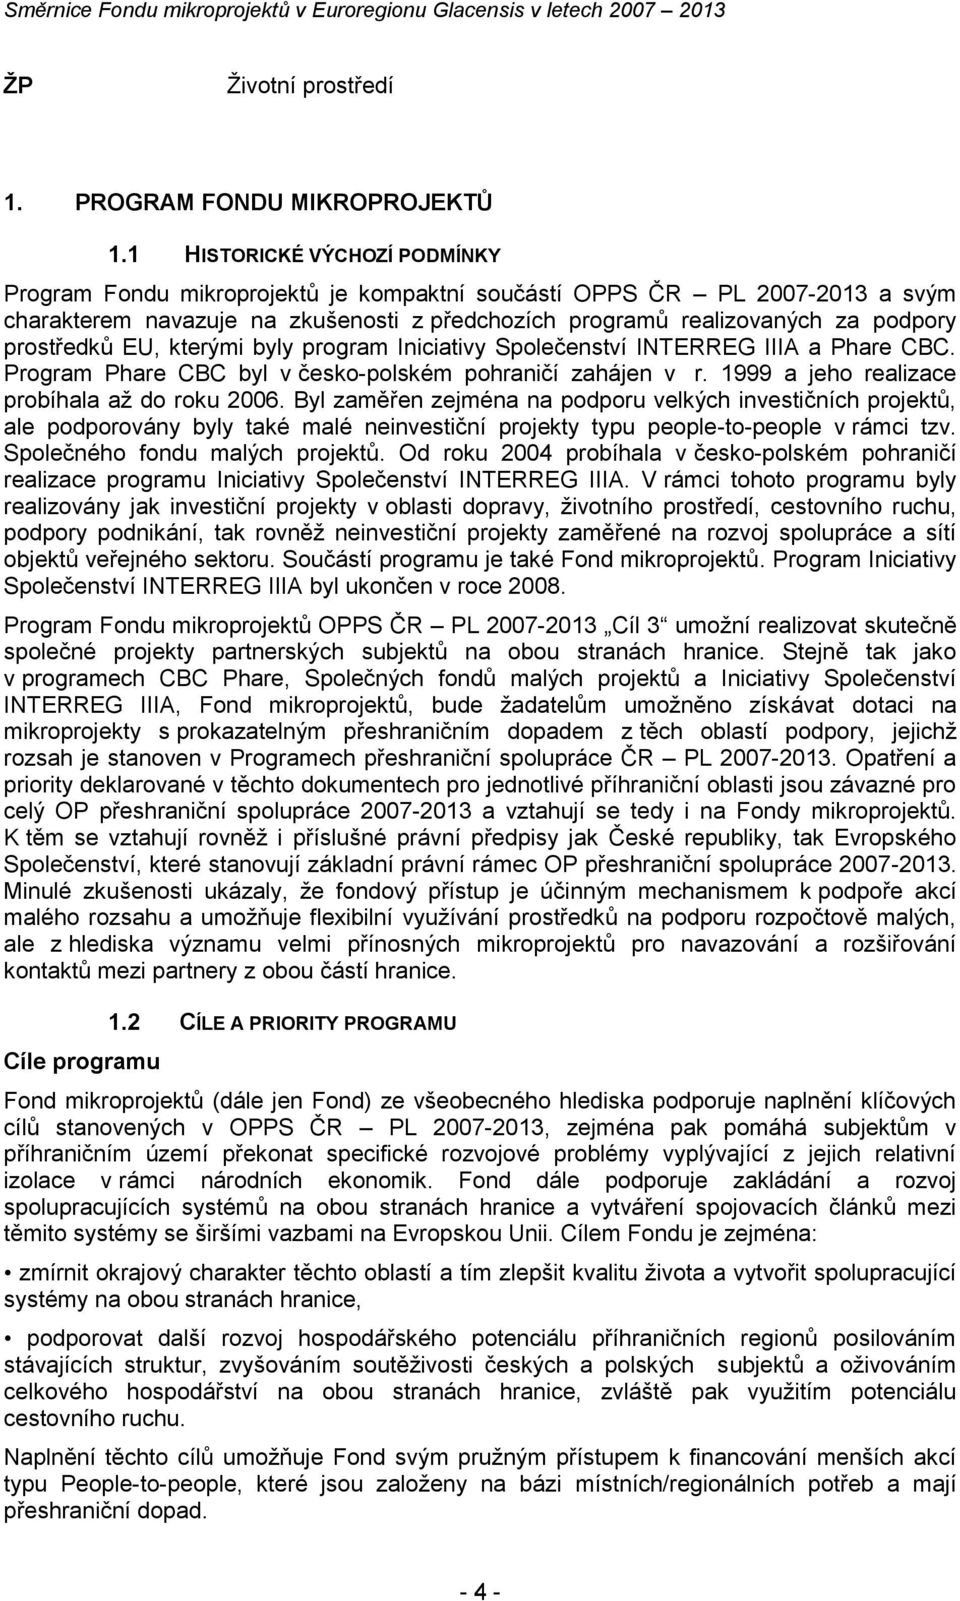 prostředků EU, kterými byly program Iniciativy Společenství INTERREG IIIA a Phare CBC. Program Phare CBC byl v českopolském pohraničí zahájen v r. 1999 a jeho realizace probíhala až do roku 2006.